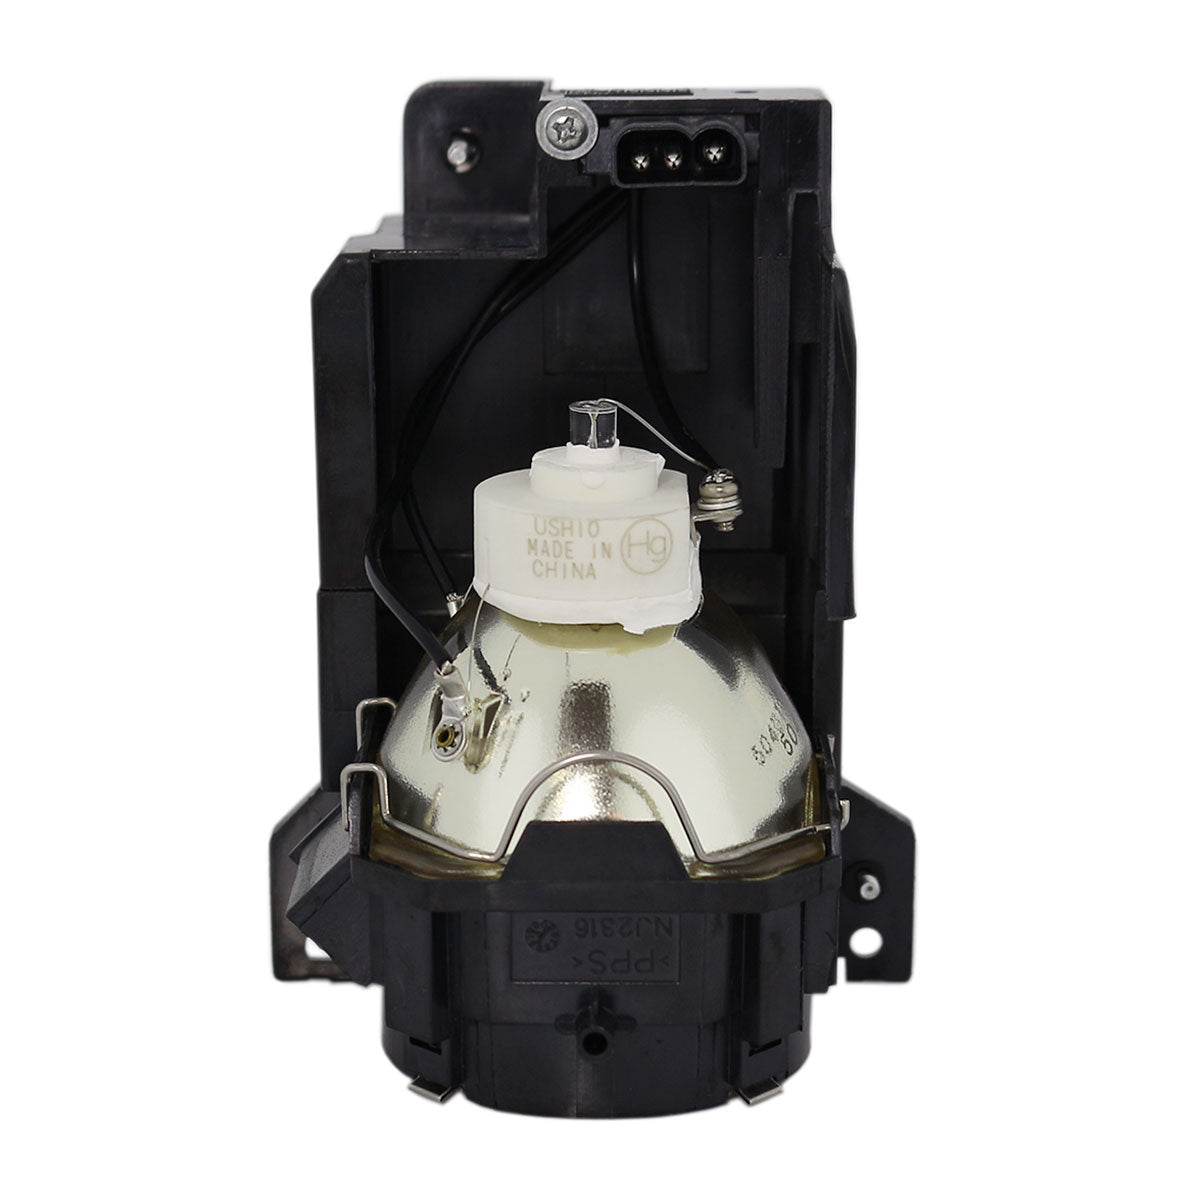 Dukane 456-8949H Ushio Projector Lamp Module